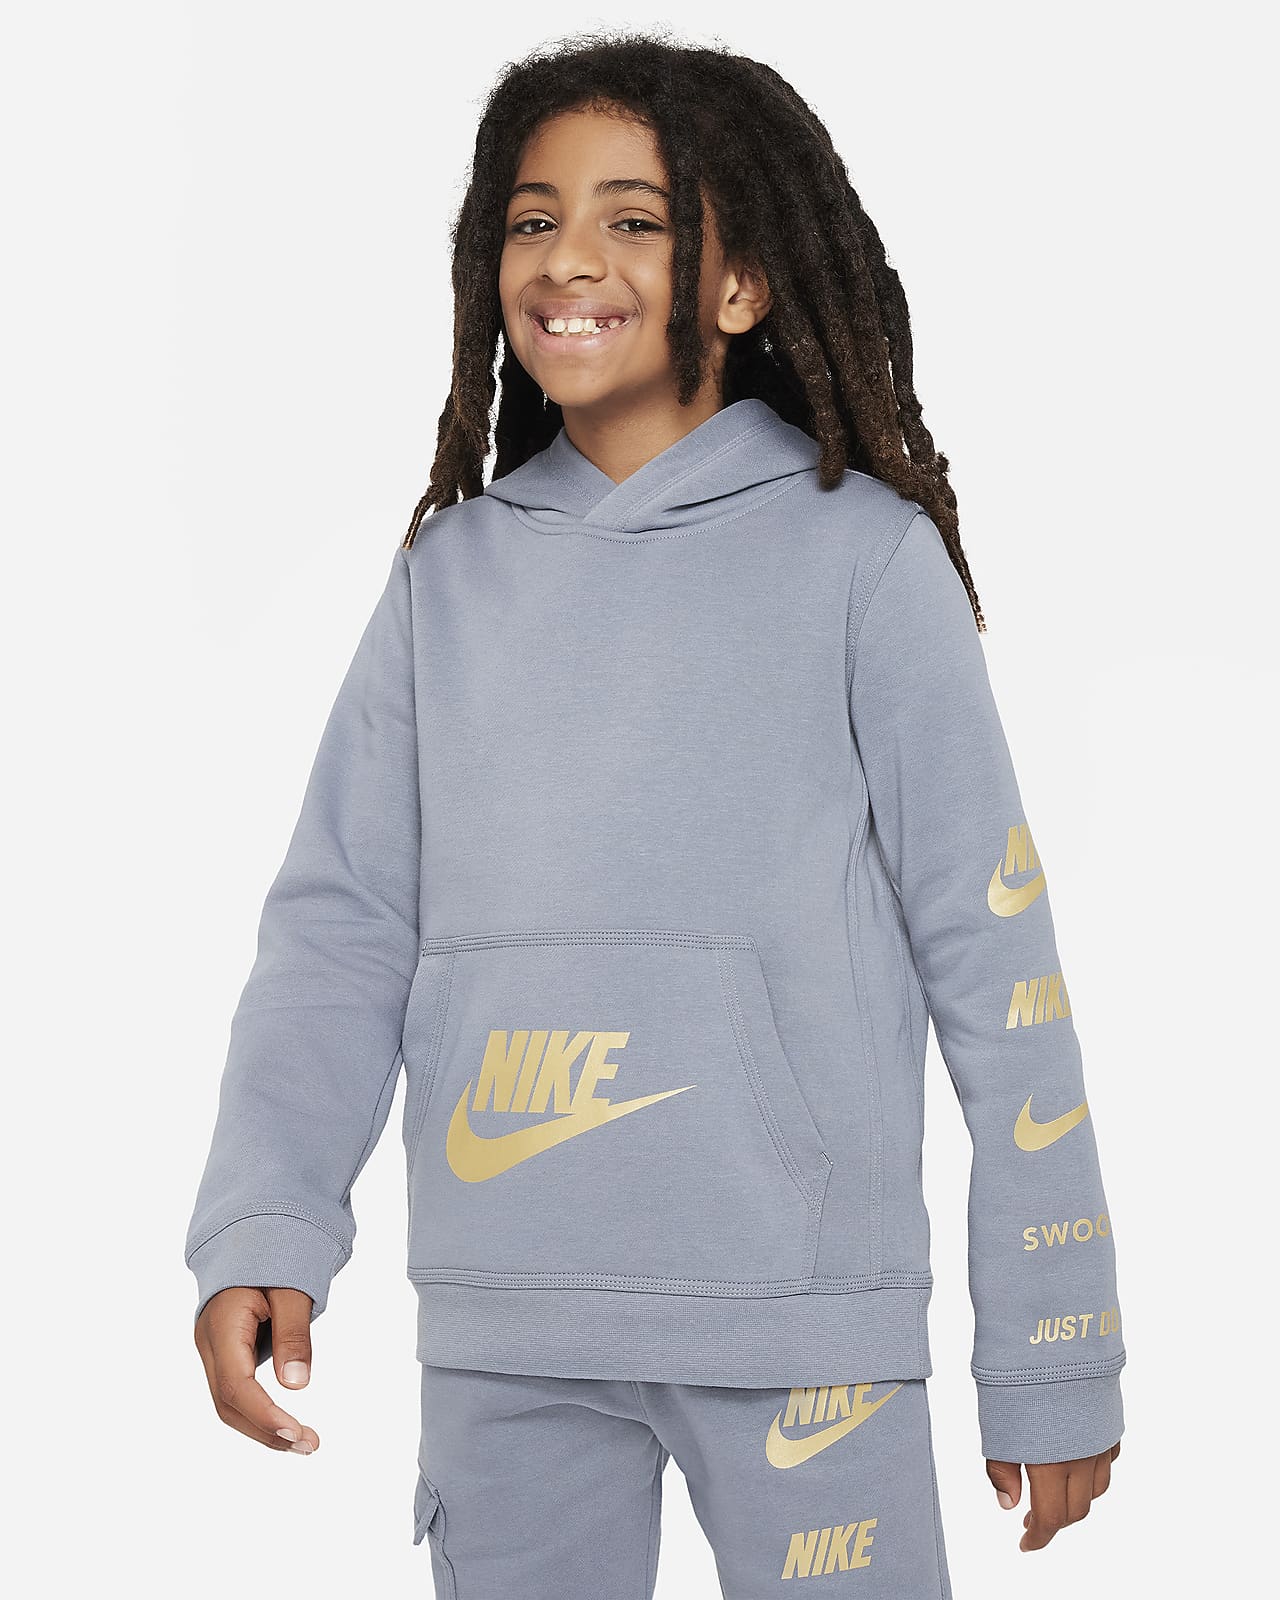 Nike Sportswear Issue Nike Pullover Older LU Standard Fleece Hoodie. Kids